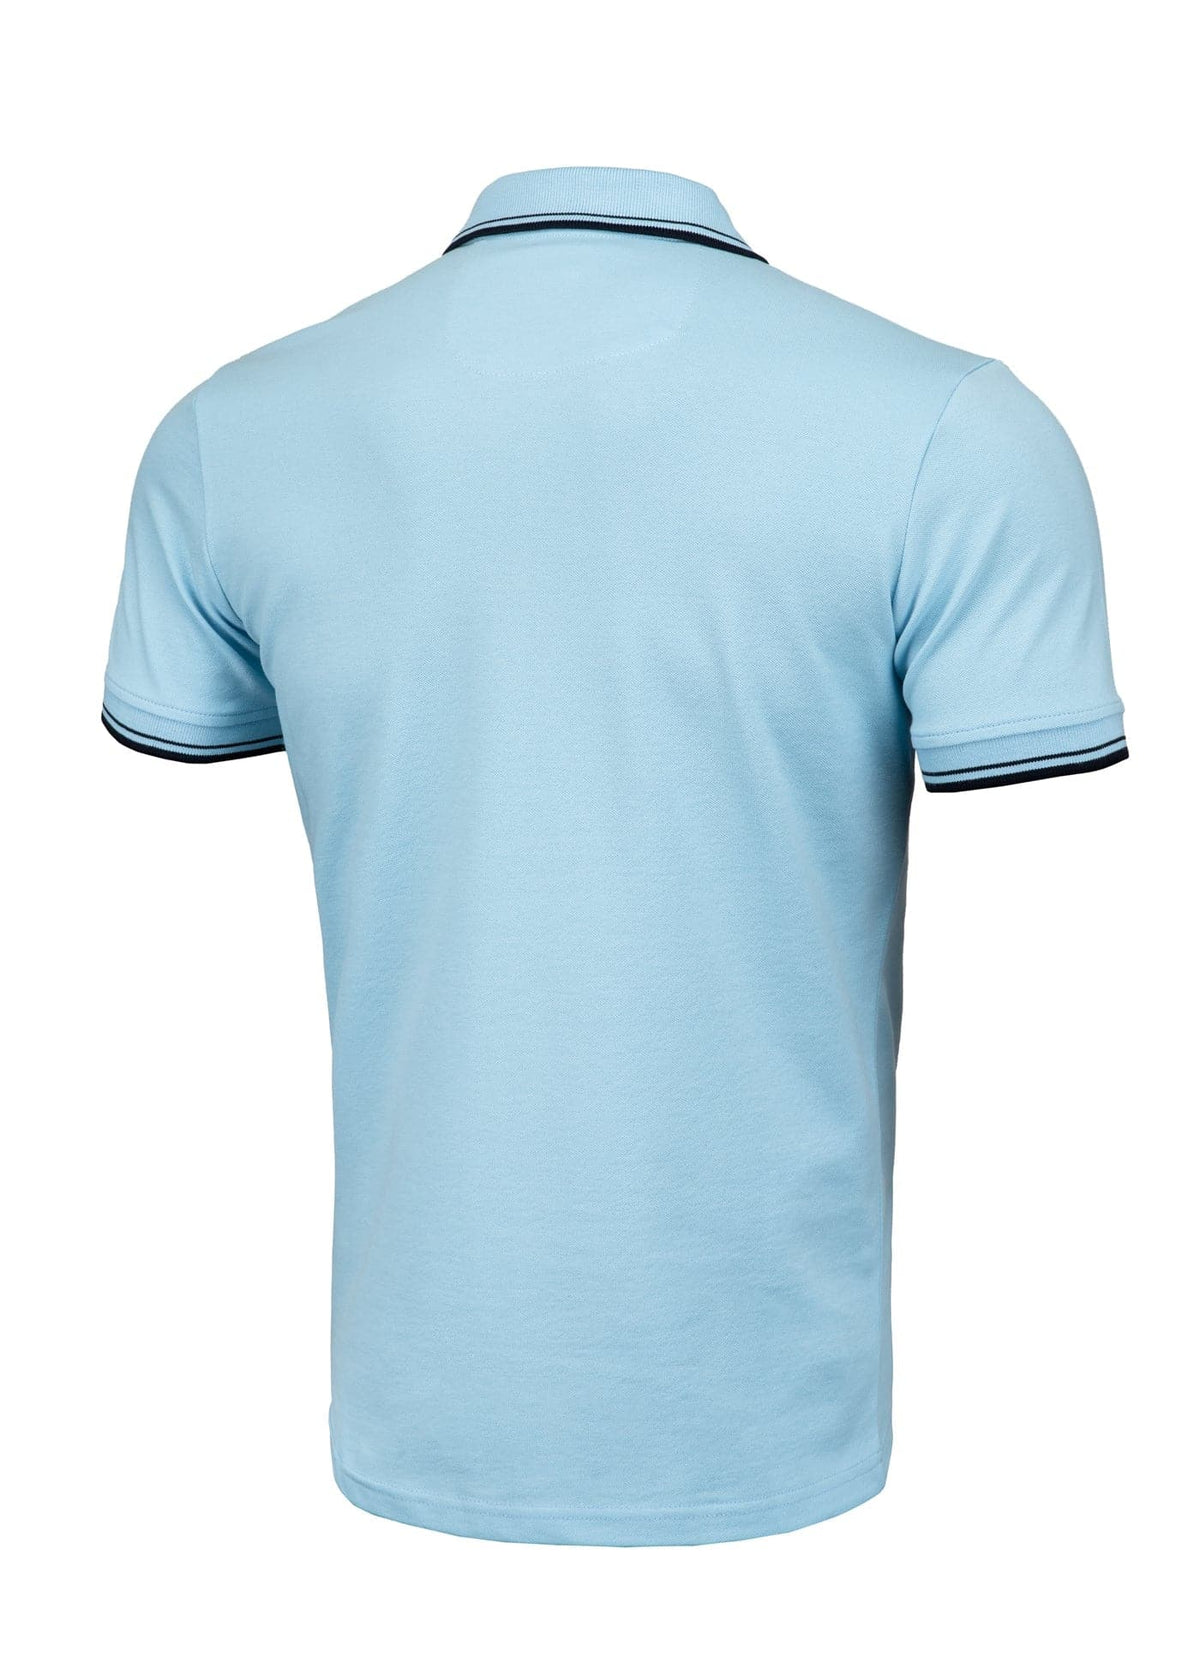 PIQUE STRIPES REGULAR Light Blue Polo T-shirt - Pitbullstore.eu